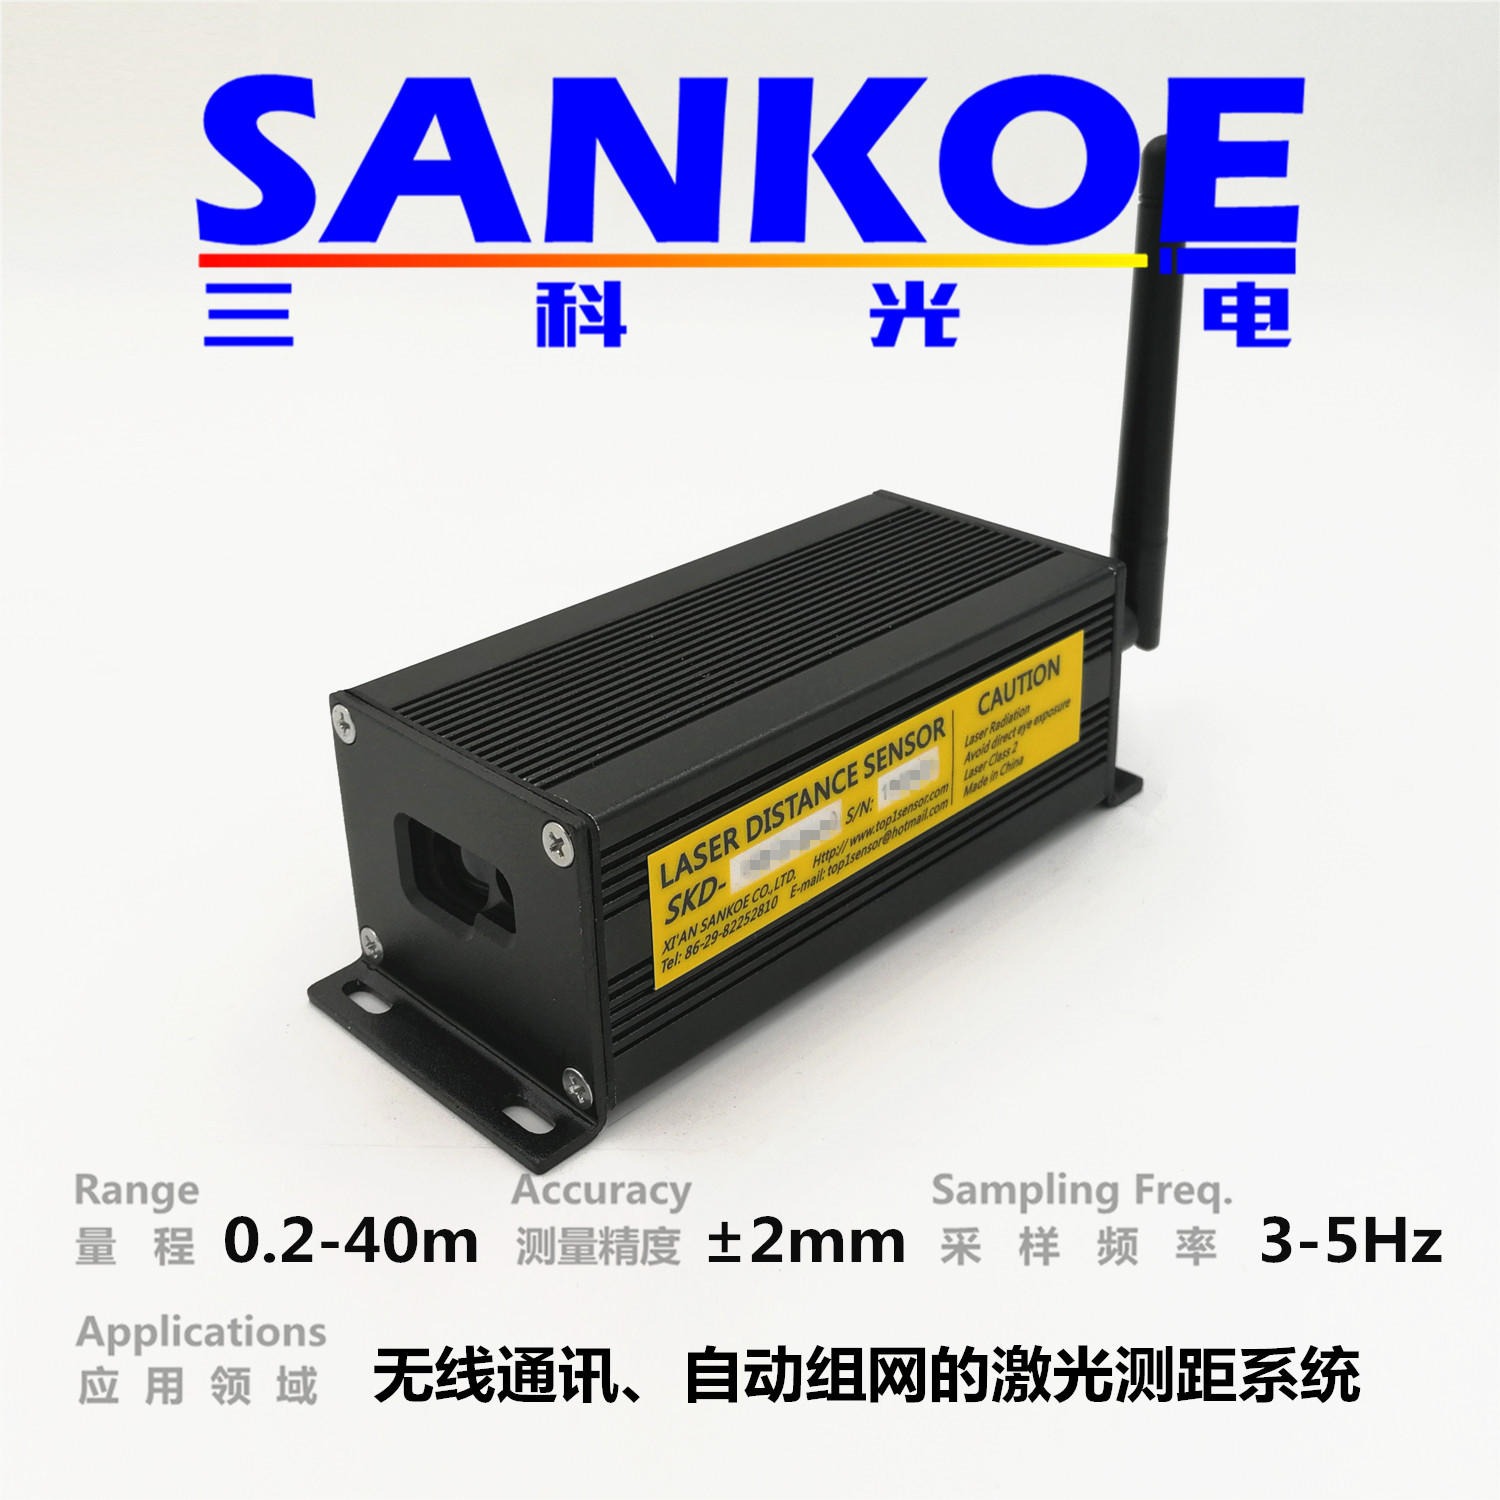 无线激光测距传感器SKD-40W，三科光电SANKOE激光定位测距模块，zigbee无线自动组网